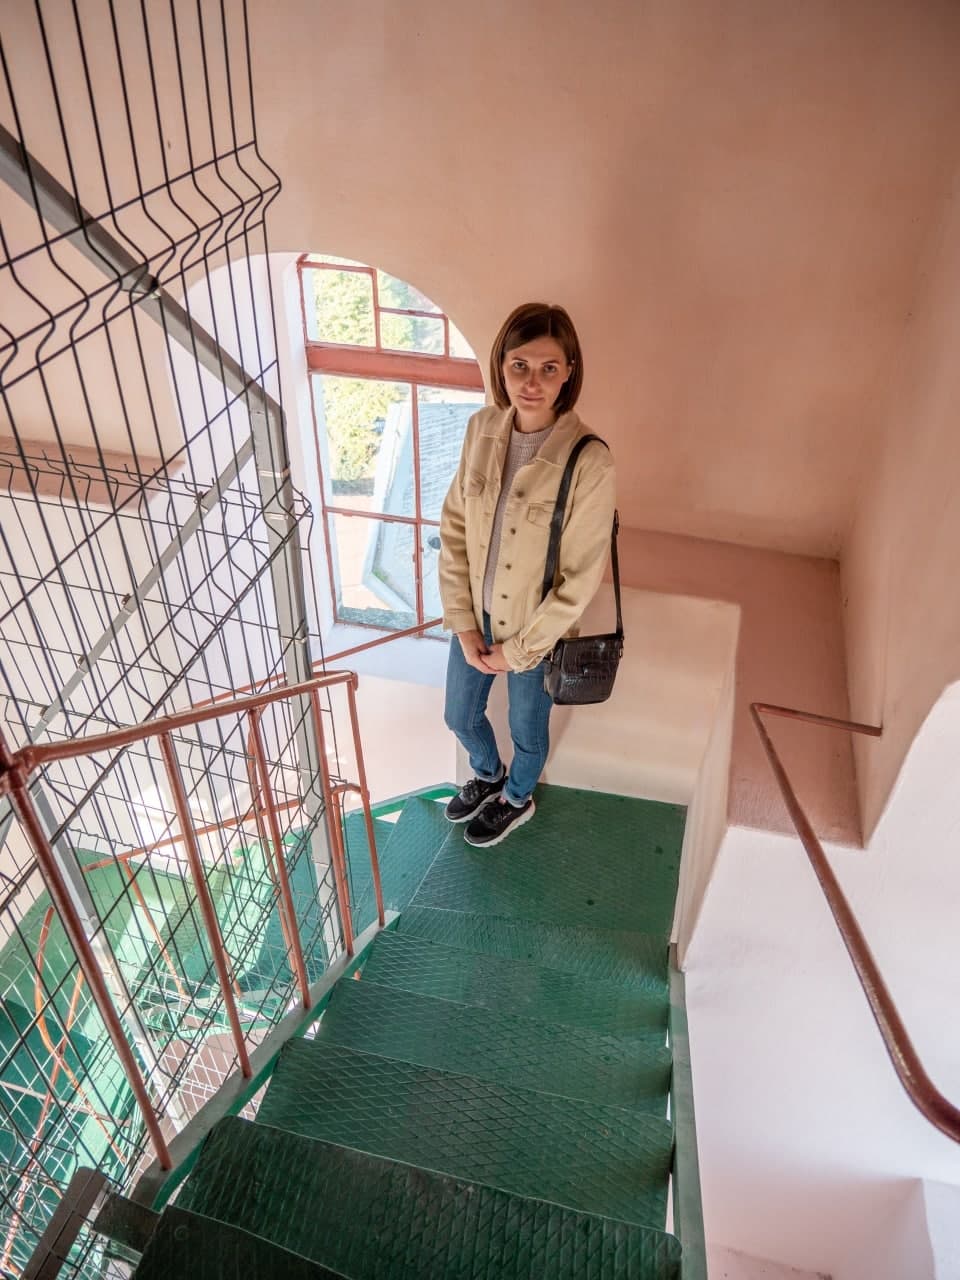 Каждое утро Людмила преодолевает 150 ступенек по винтовой лестнице, взбираясь на 50-метровую башню Ратуши - вторую по высоте в стране. Фото: личный архив Юрий Рокицкий.